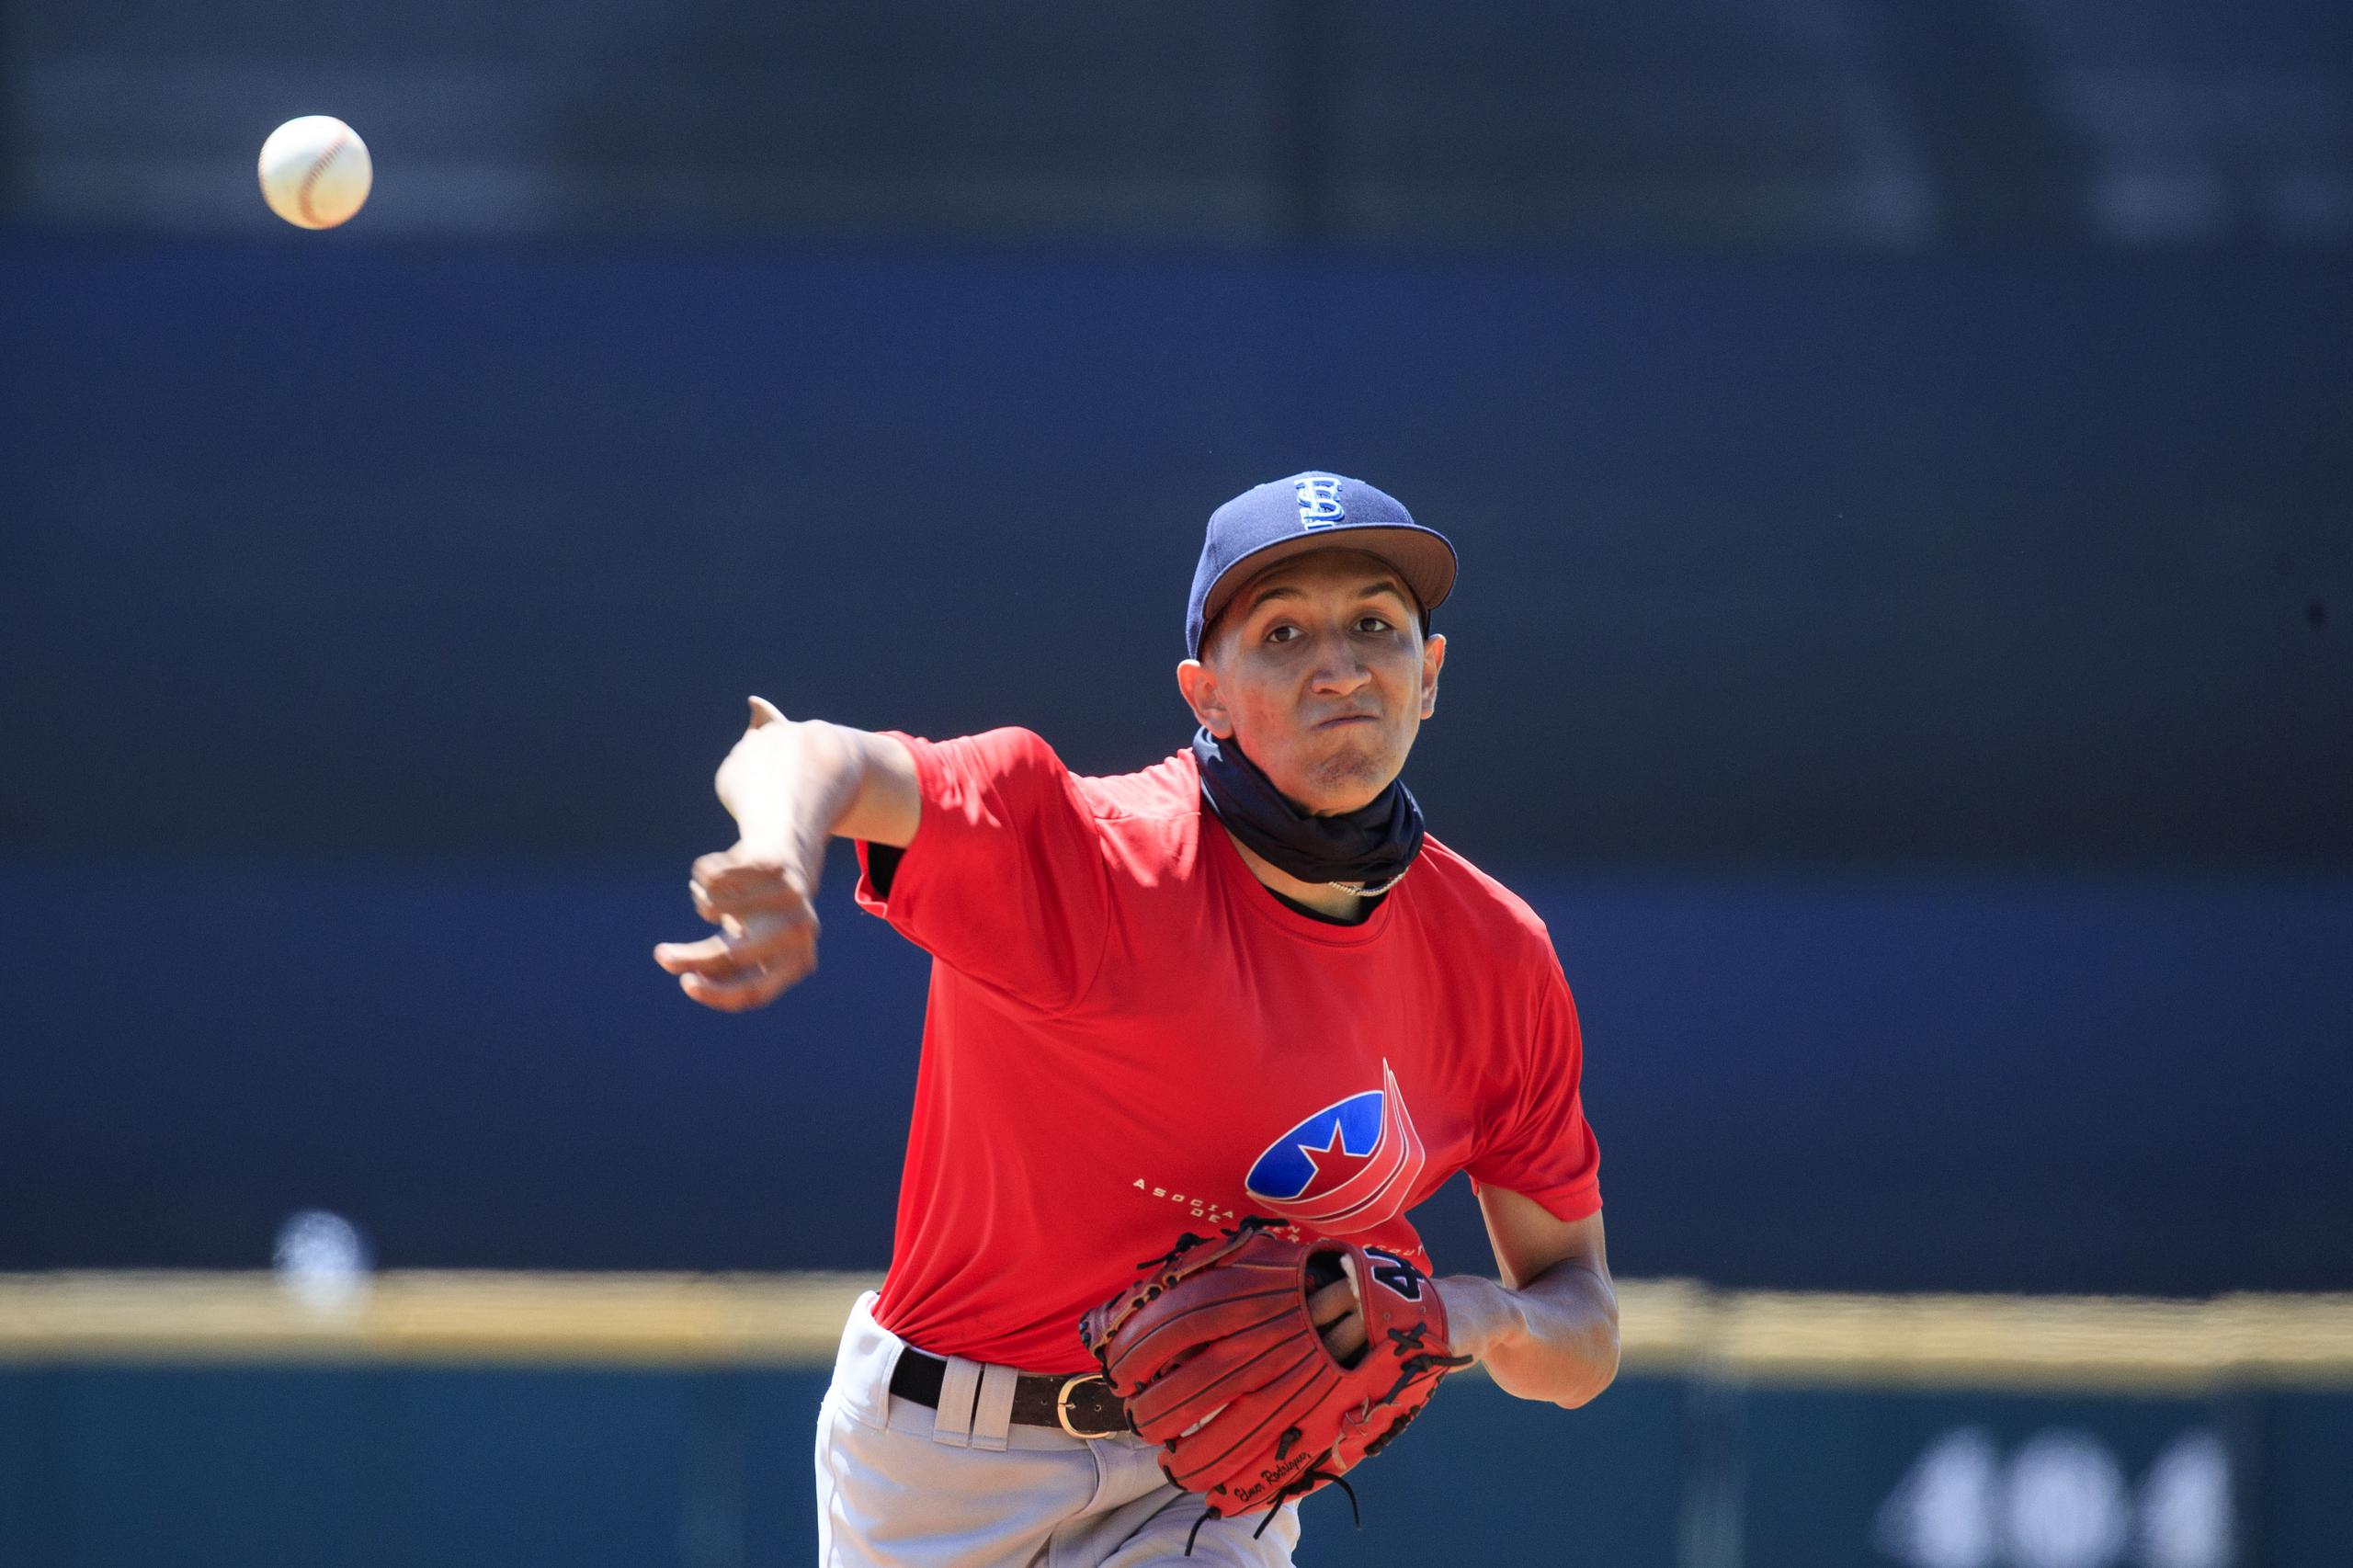 El lanzador Elmer Rodríguez, de 17 años, ya tiene un compromiso para estudiar en la Universidad de Oregon.